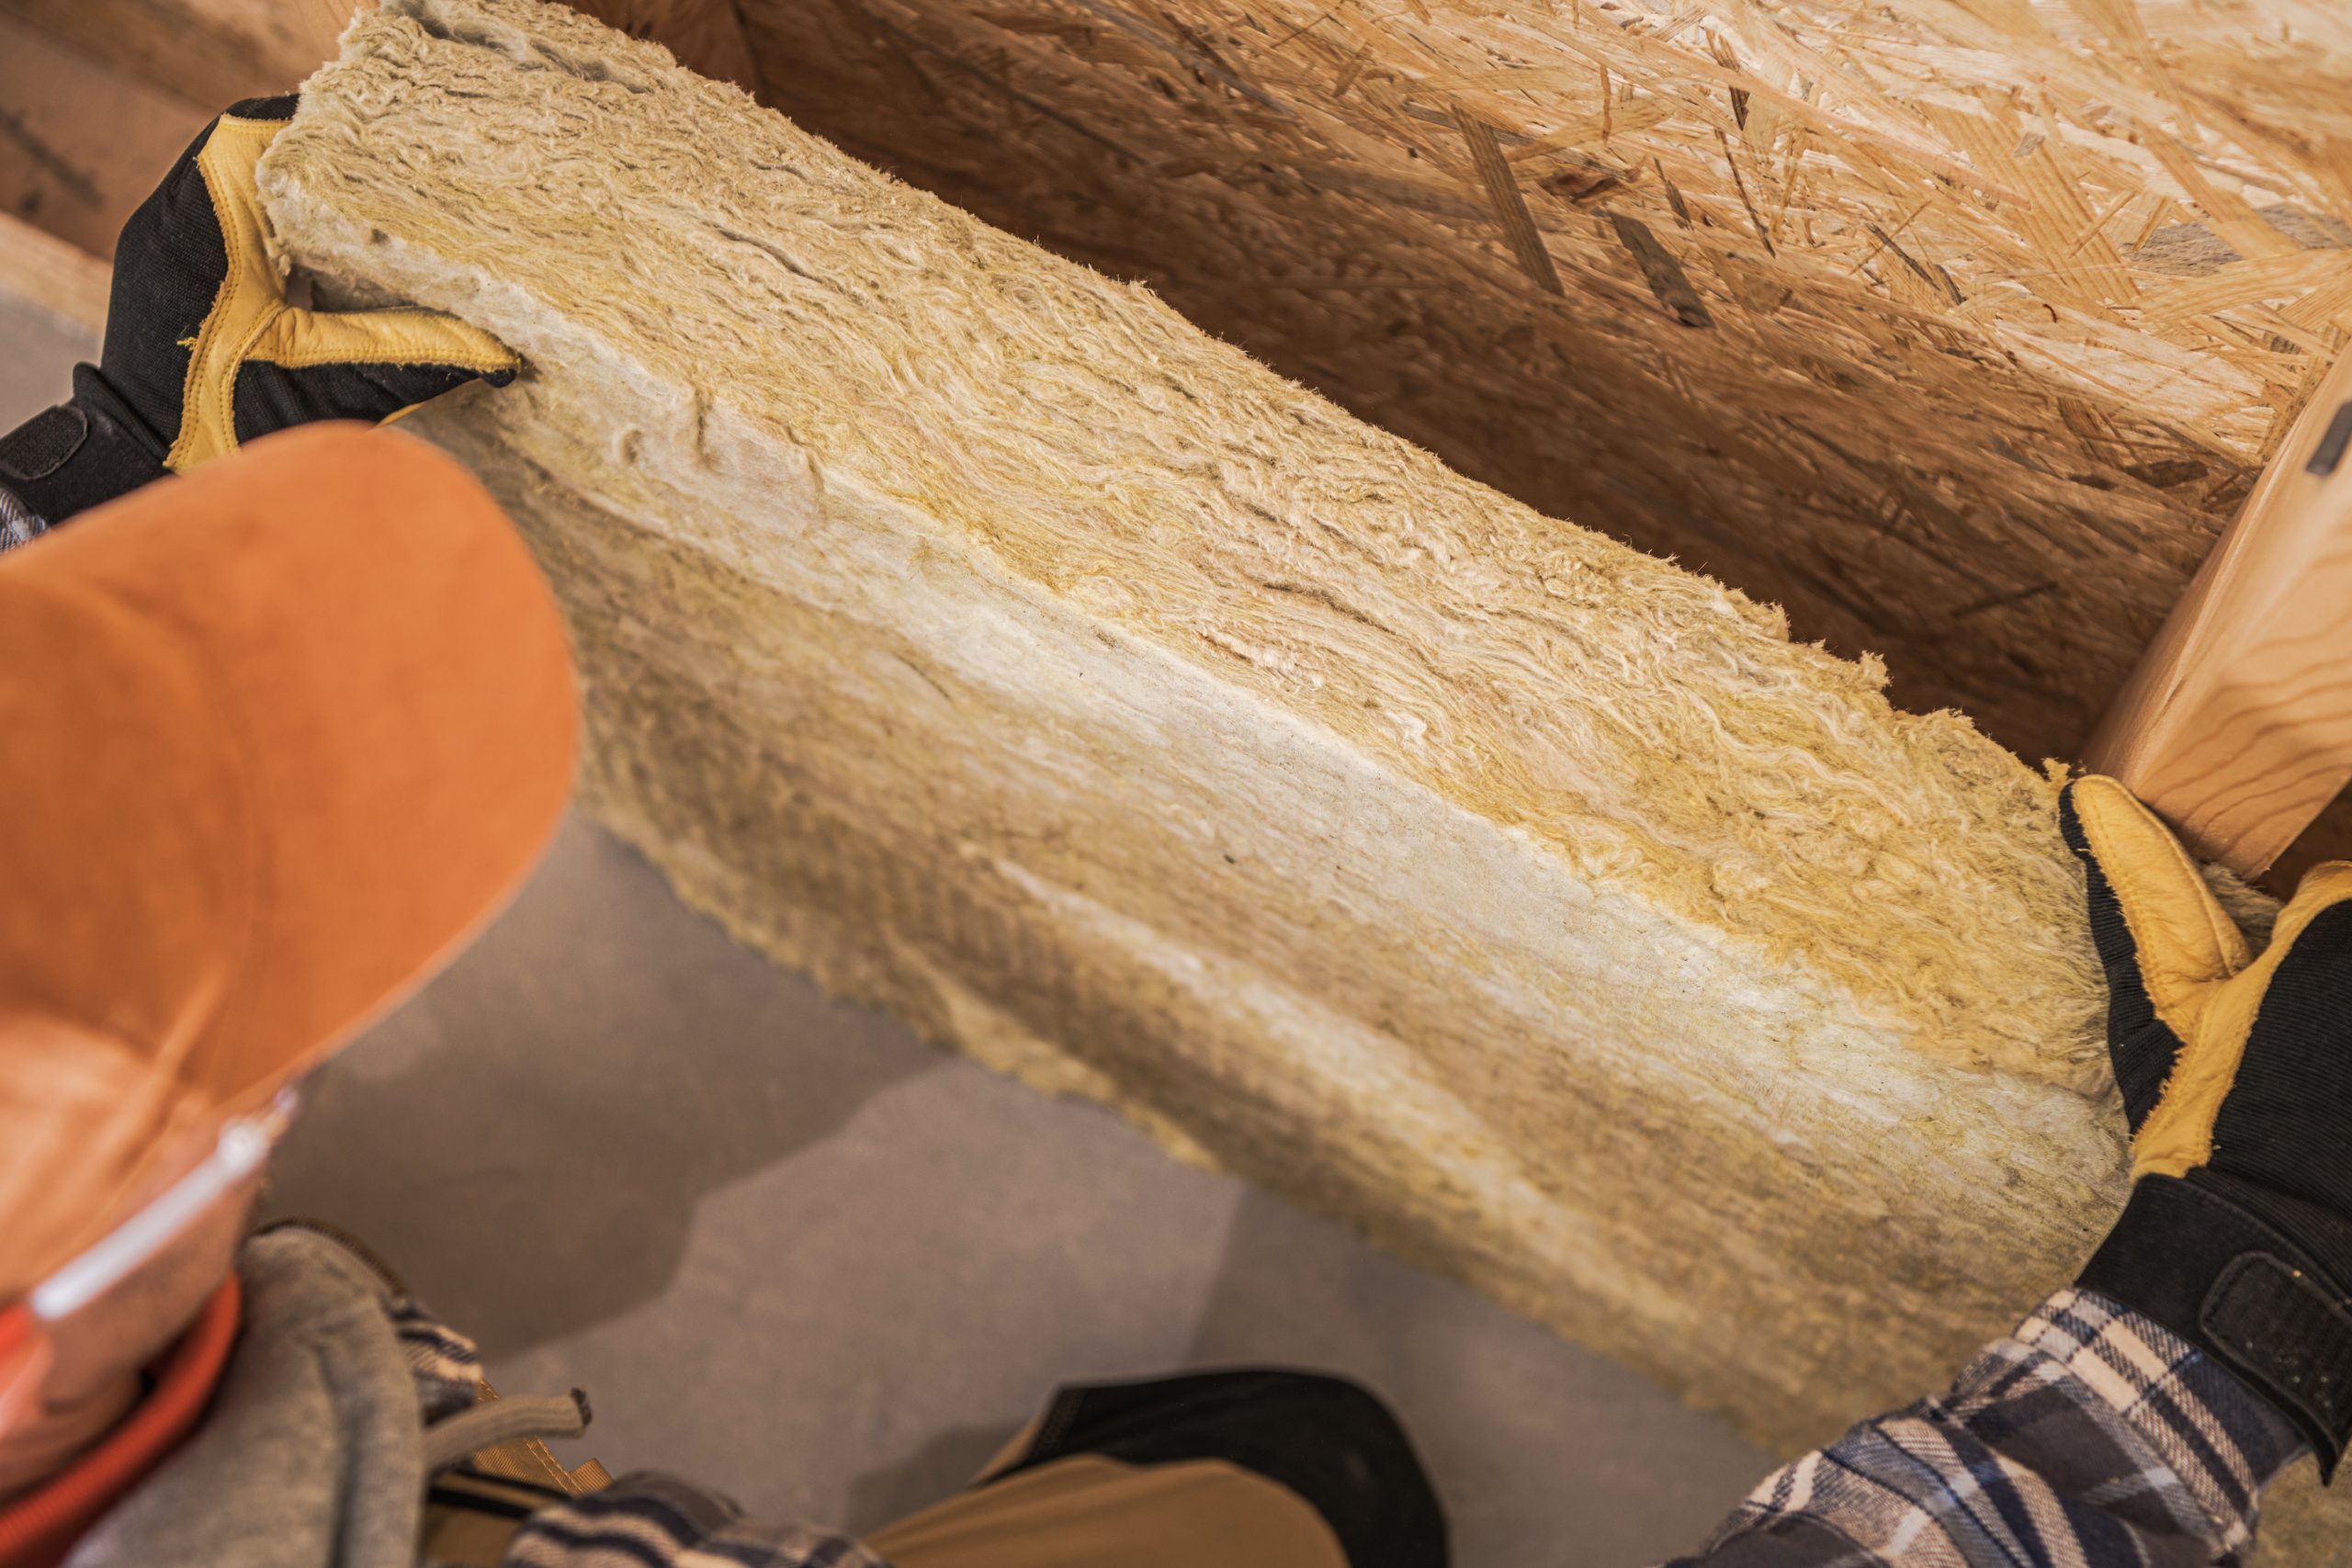 Stavebný špecialista drží plát fúkanej drevovláknitej izolácie počas stavby montovaného drevodomu